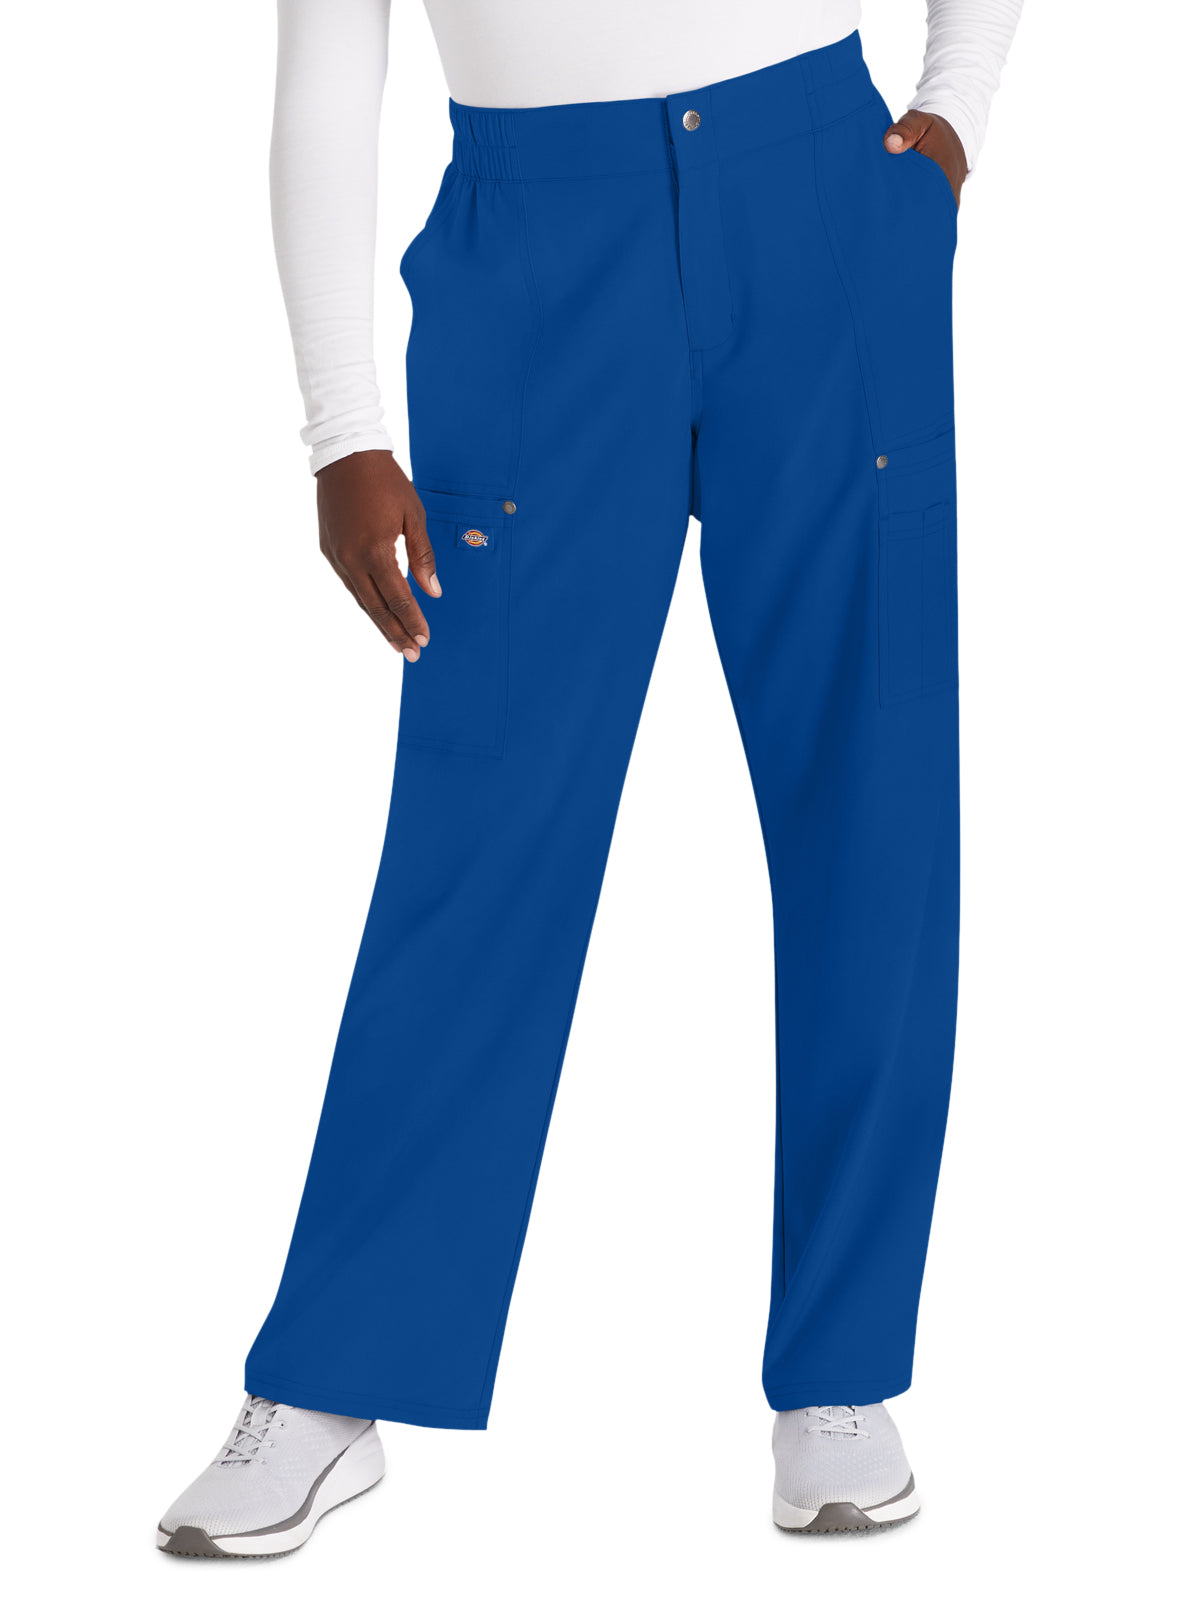 Women's 5-Pocket Wide Leg Scrub Pant - DK219 - Galaxy Blue